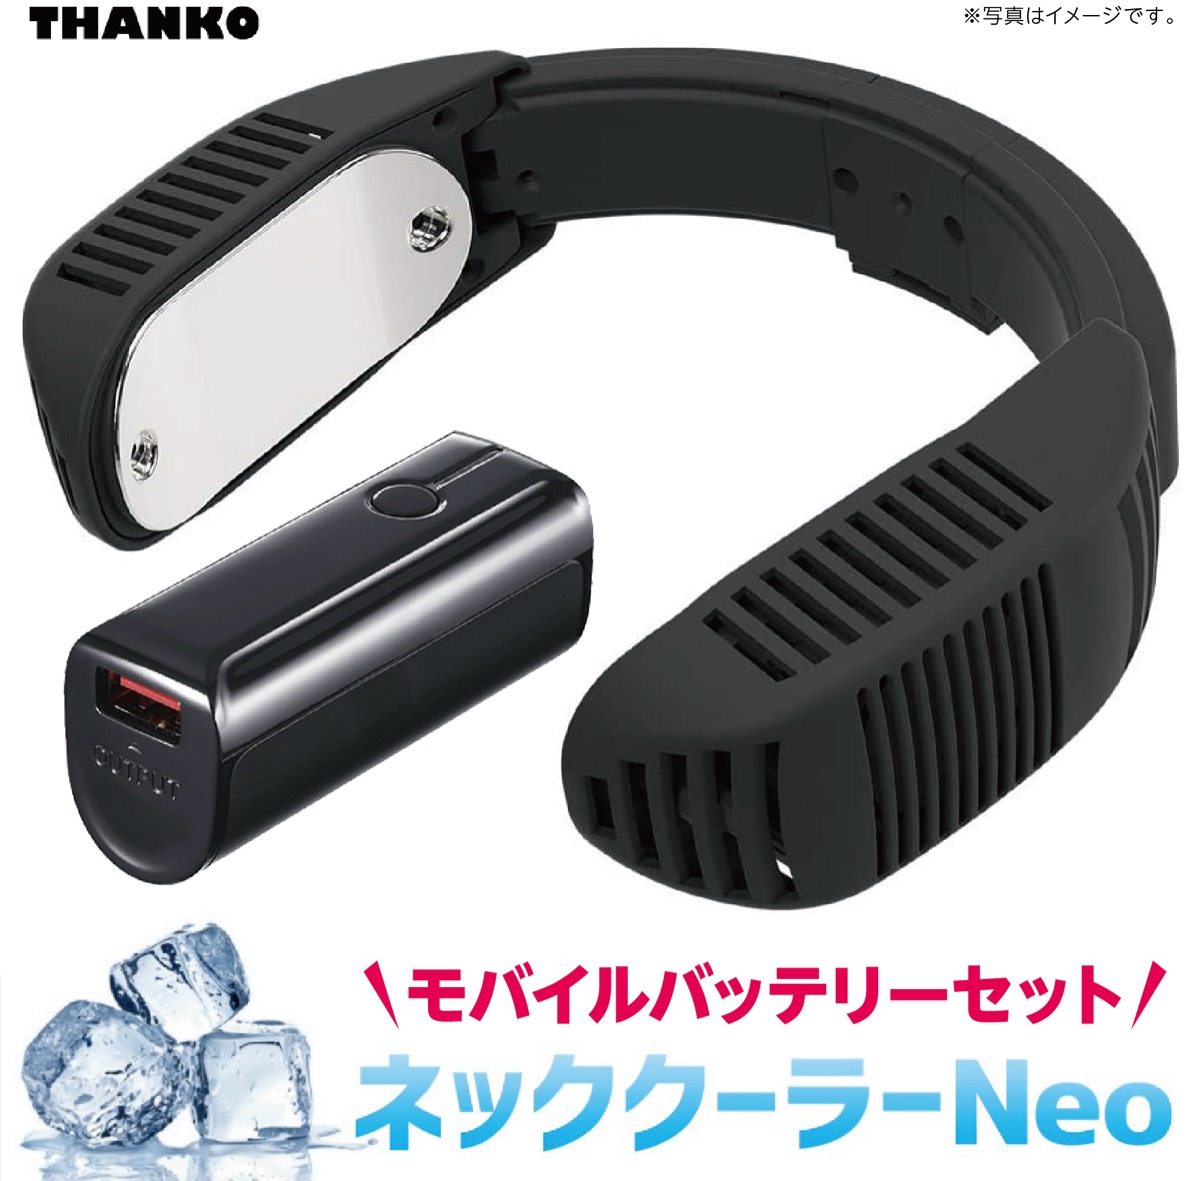 【在庫あり】 【セット】 サンコー ネッククーラー Neo ブラック モバイルバッテリー(3,350mAh)セット TK-NECK2-BK ネオ  2020年 小型 軽量 熱中症対策 TK-NECK2 THANKO (06) | APマーケット